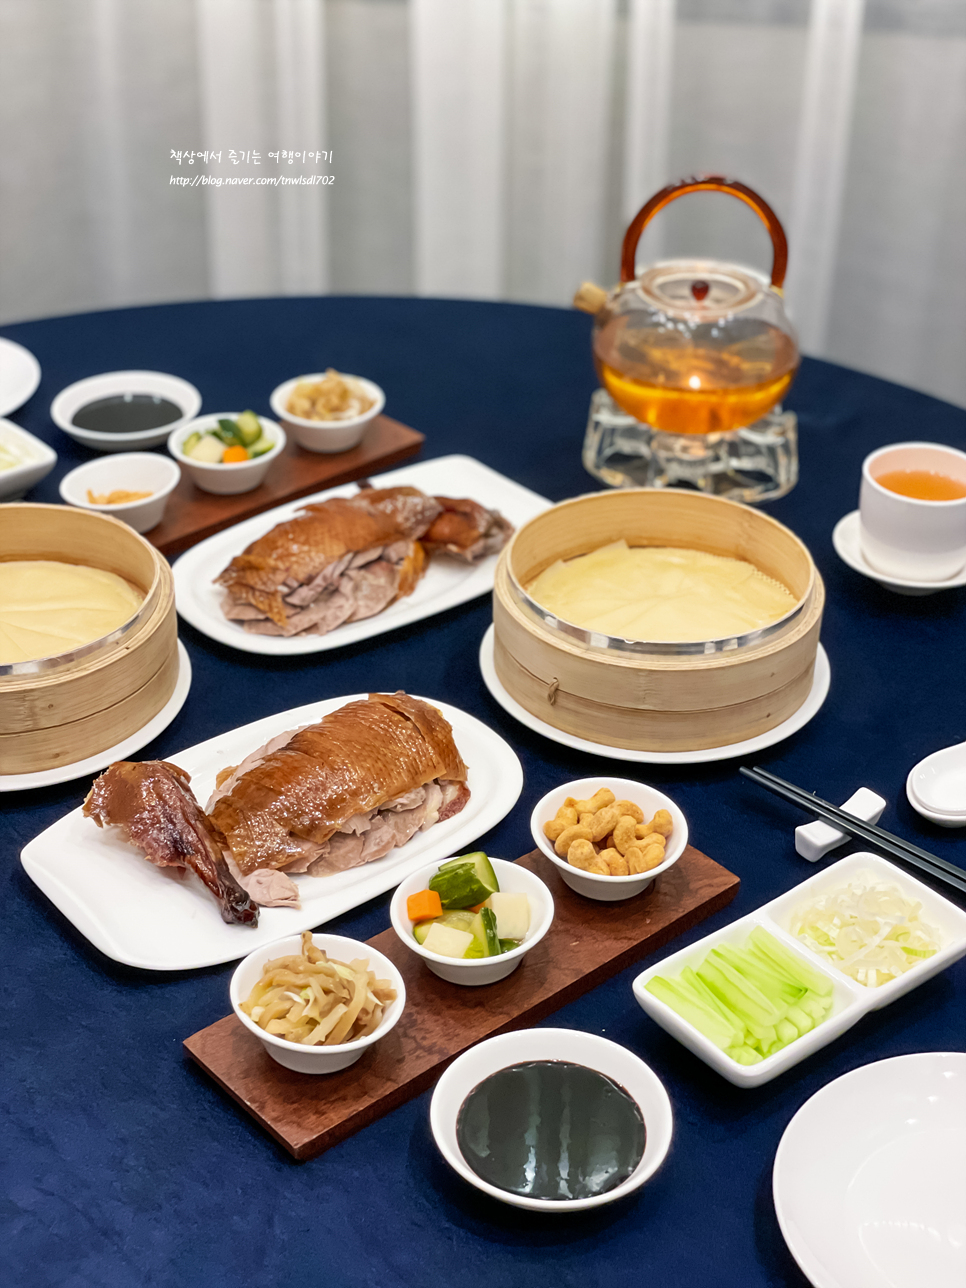 서울 강남 단독 룸식당 더리버사이드호텔 중식당 따뚱